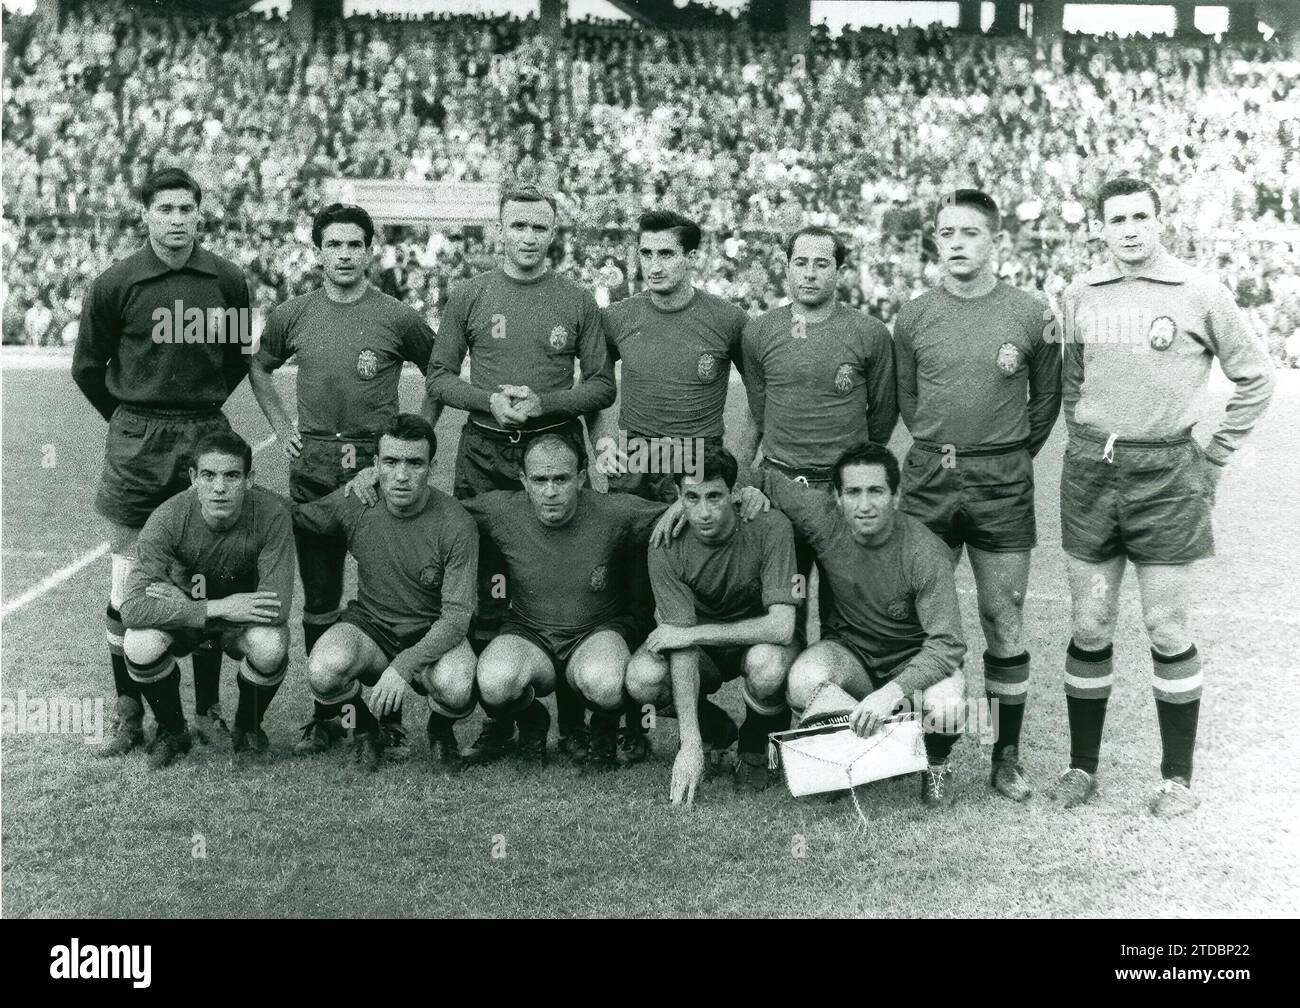 10.06.1961, Spanien-Argentinien 10. Juni 1. Spanien-Argentinien. Juni 1961. - Die spanische Mannschaft, die gegen Argentinien kämpfte, fand am 10. Juni 1961 im Stadion Ramón Sánchez-Pizjuán statt. Es war das erste internationale Spiel, das im neuen Veranstaltungsort von Sevilla ausgetragen wurde. Spanien gewann mit 2:0. Im Bild, von links nach rechts, stehend, Vicente, Rivilla, Santamaría, Calleja, Ruiz Sosa, Vidal und Carmelo; hockte, Mateos, del Sol, Di Stefano, Peiró und Gento. Quelle: Album / Archivo ABC / Ángel Gómez Gelan Stockfoto